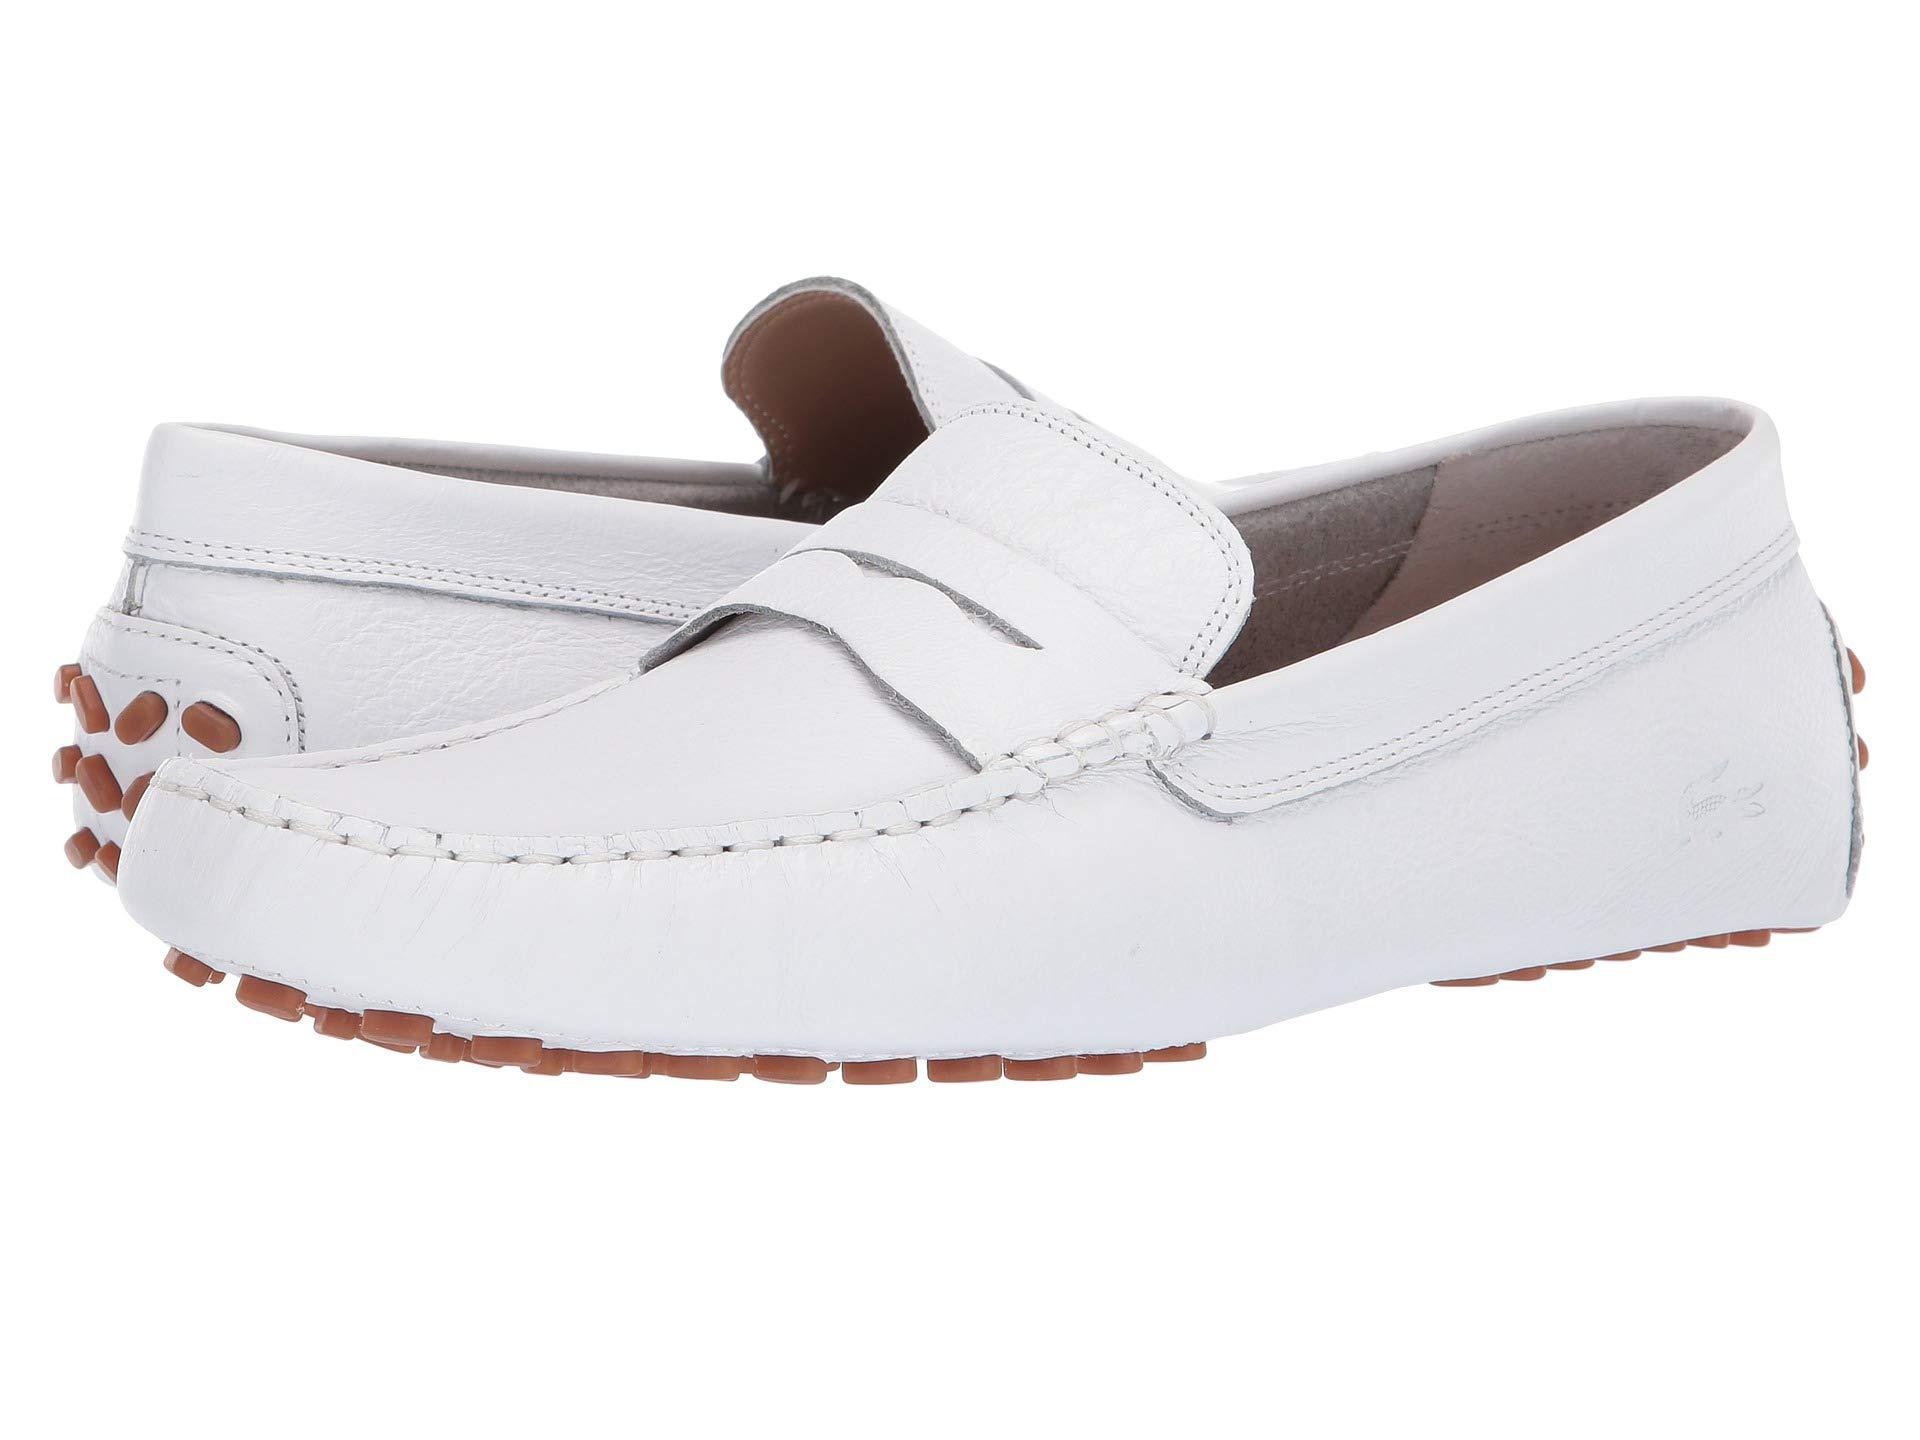 Lacoste Concours 119 1 P Cma (white/gum) Men's Shoes for Men | Lyst